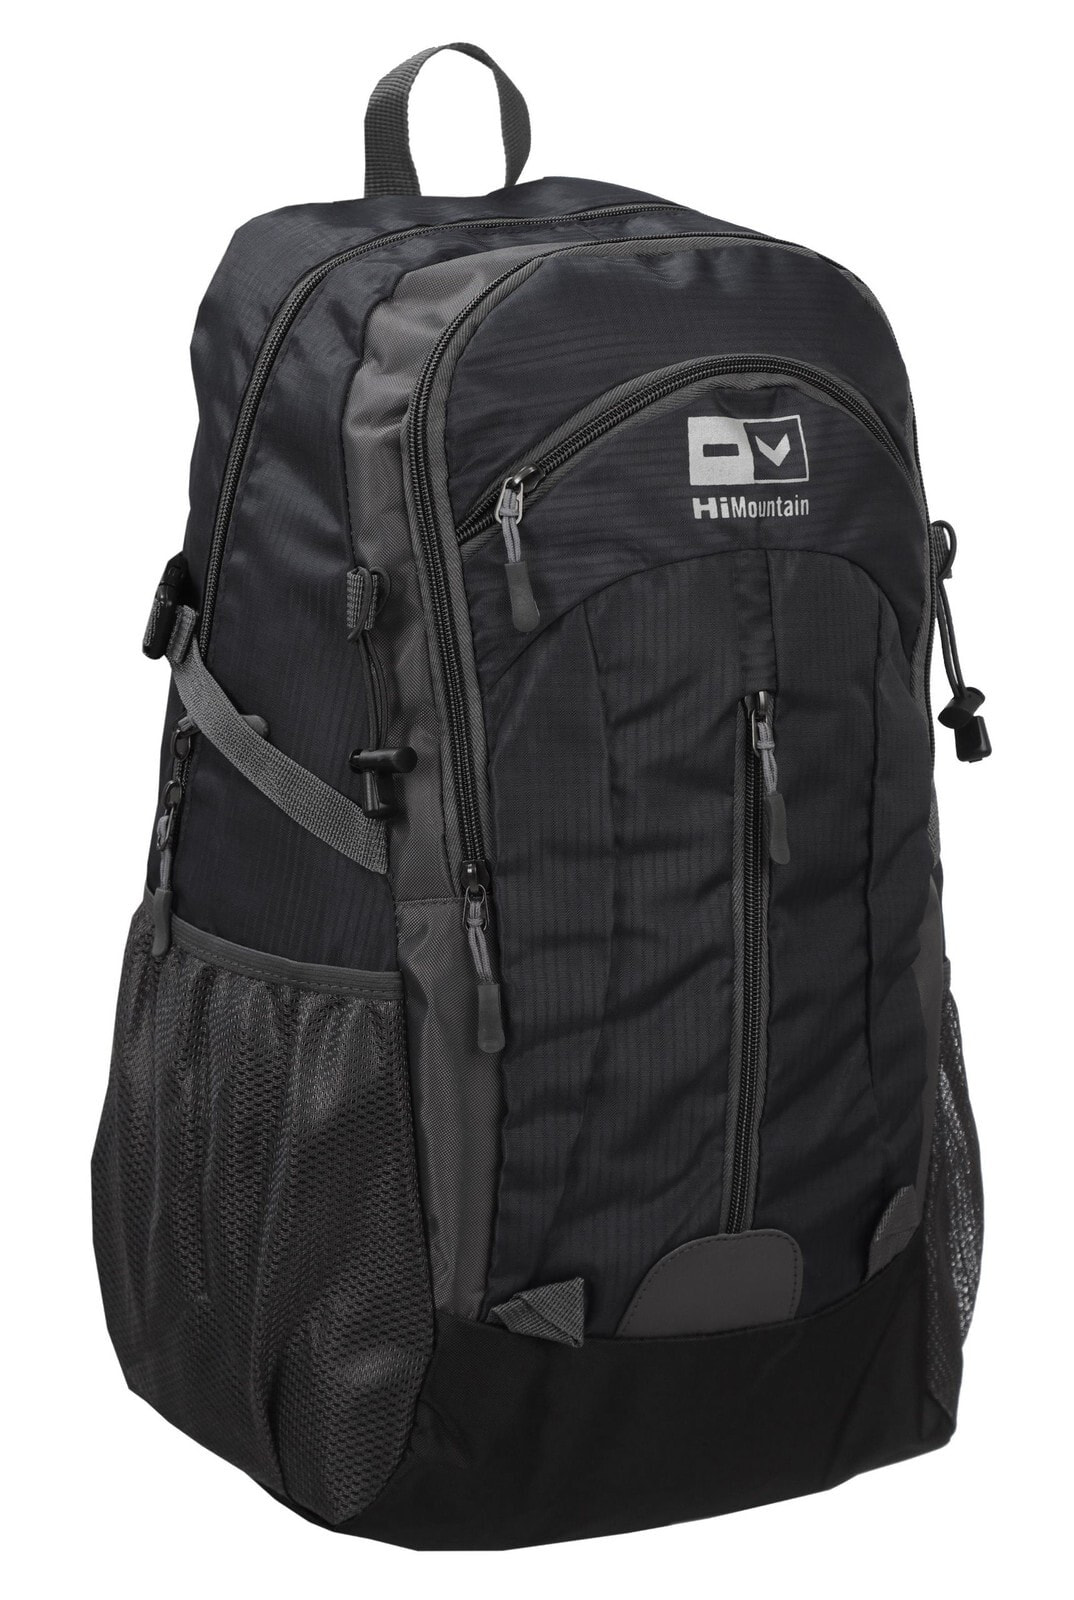 Мужской спортивный походный рюкзак черный для путешествий Hi Mountain AB11069-B CZER